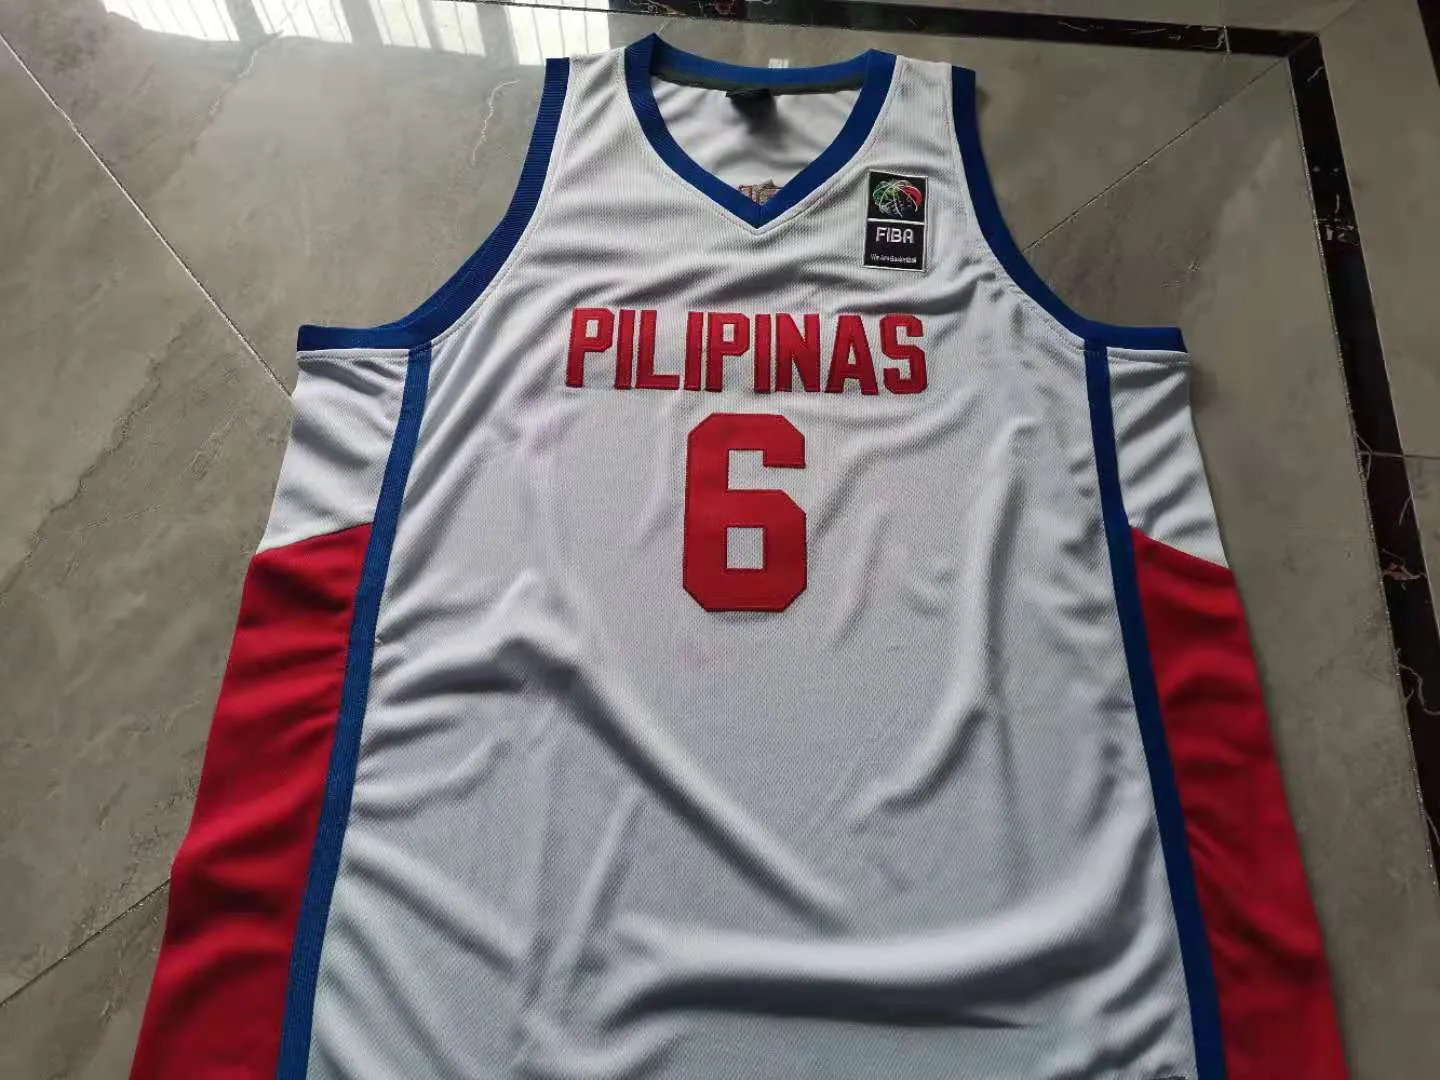 Jersey de basquete raro homens juventude mulheres vintage pilipinas jord um clarkson filipinas fiba tamanho mundial s-5xl personalizado todo nome ou número